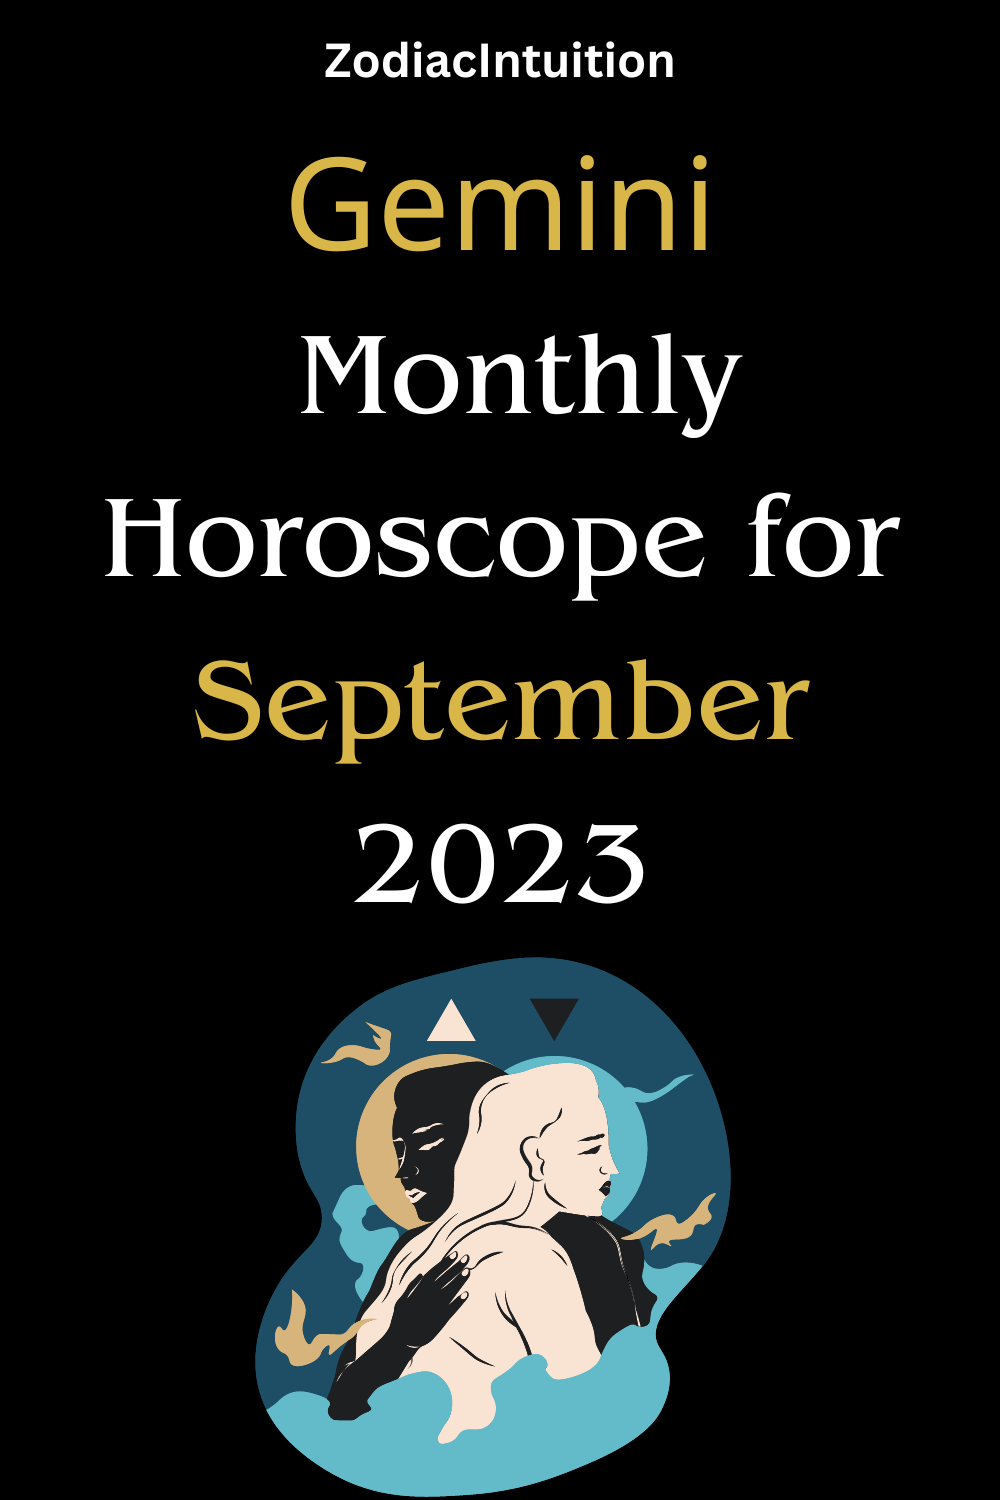 Gemini Monthly Horoscope for September 2023